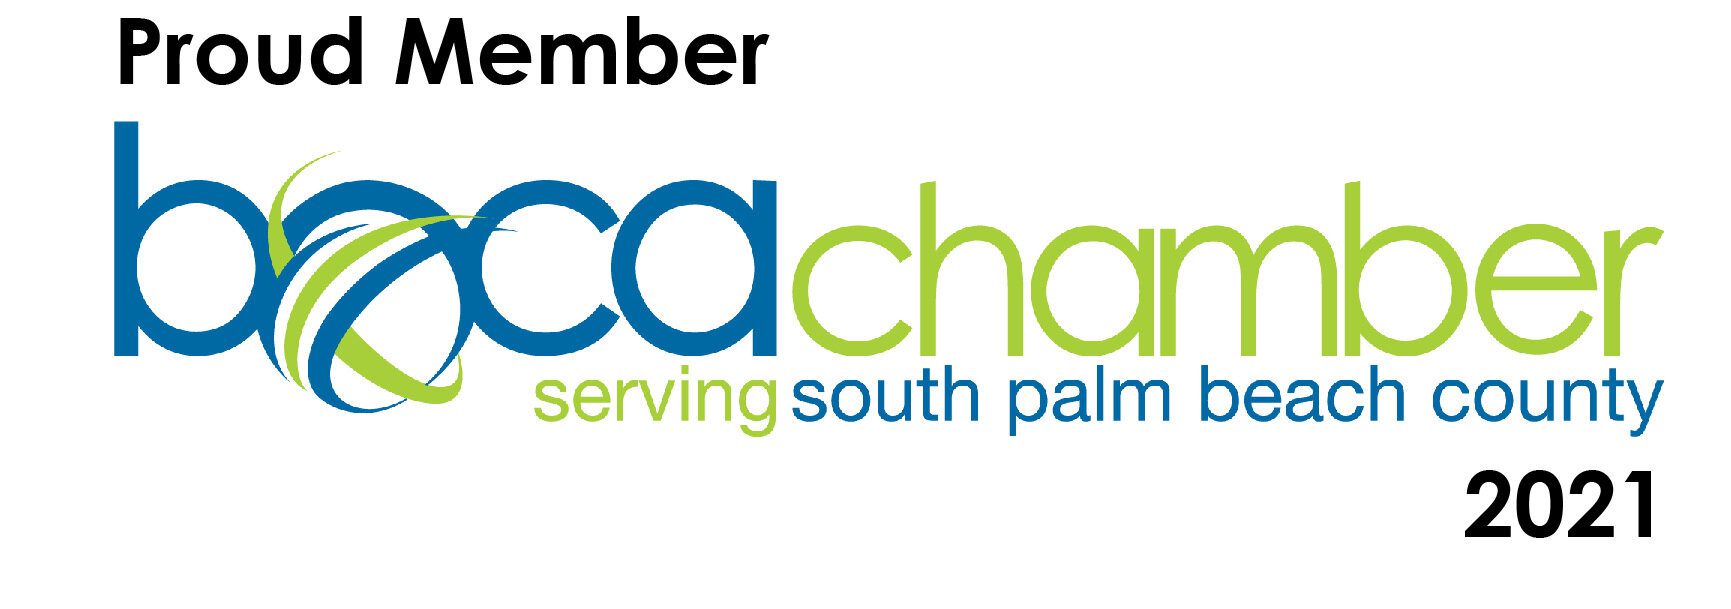 Boca Chamber of Commerce